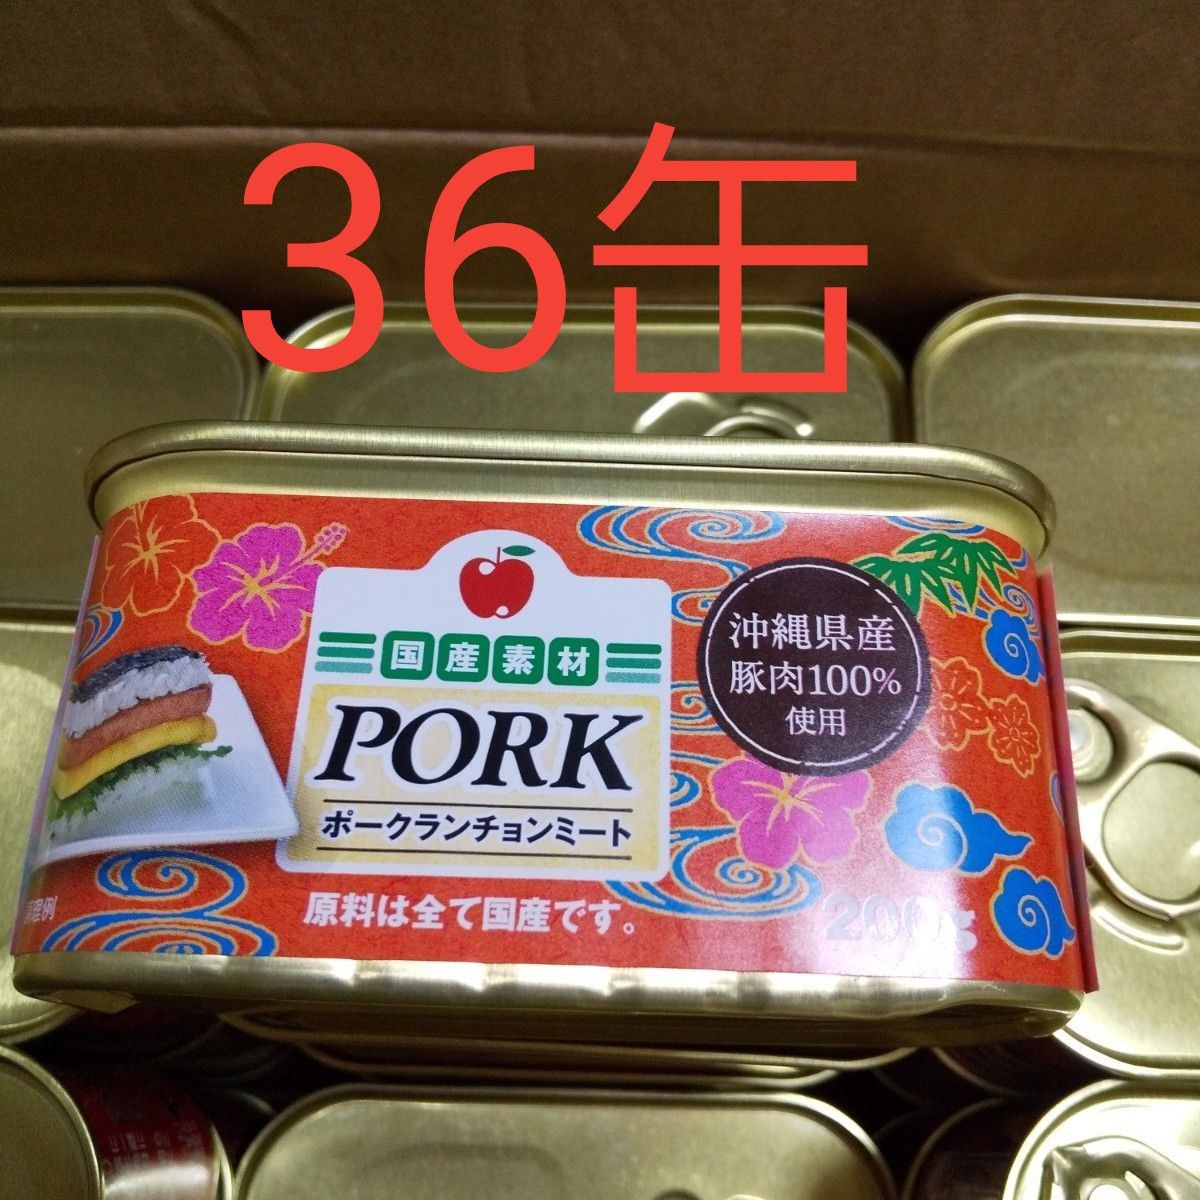 ポークランチョンミート スパム 沖縄コープ 36缶 【正規品質保証